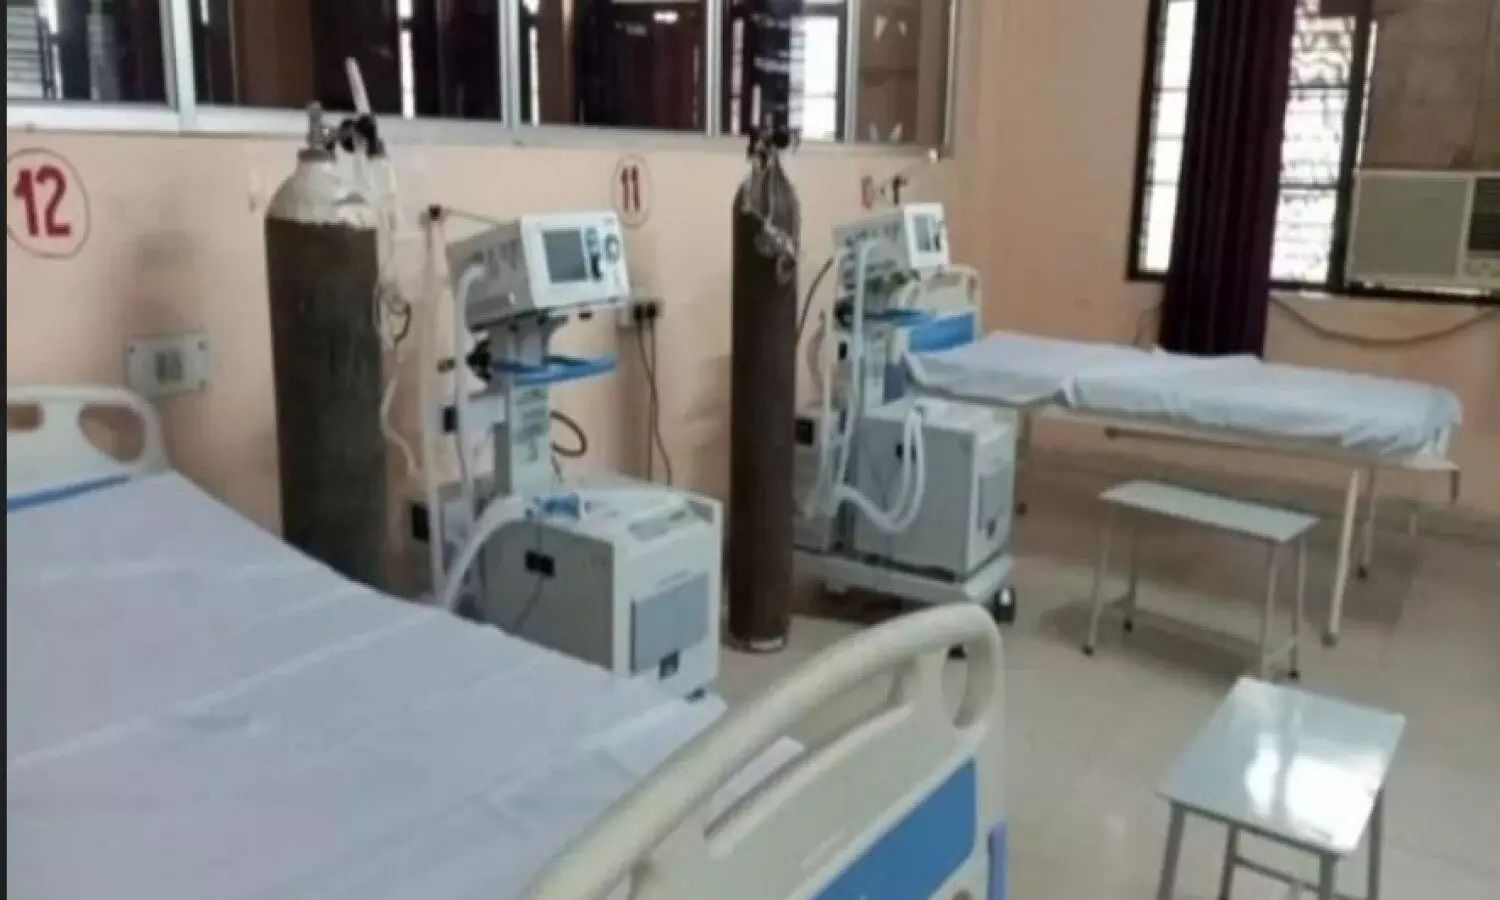 ventilator is established in medical college